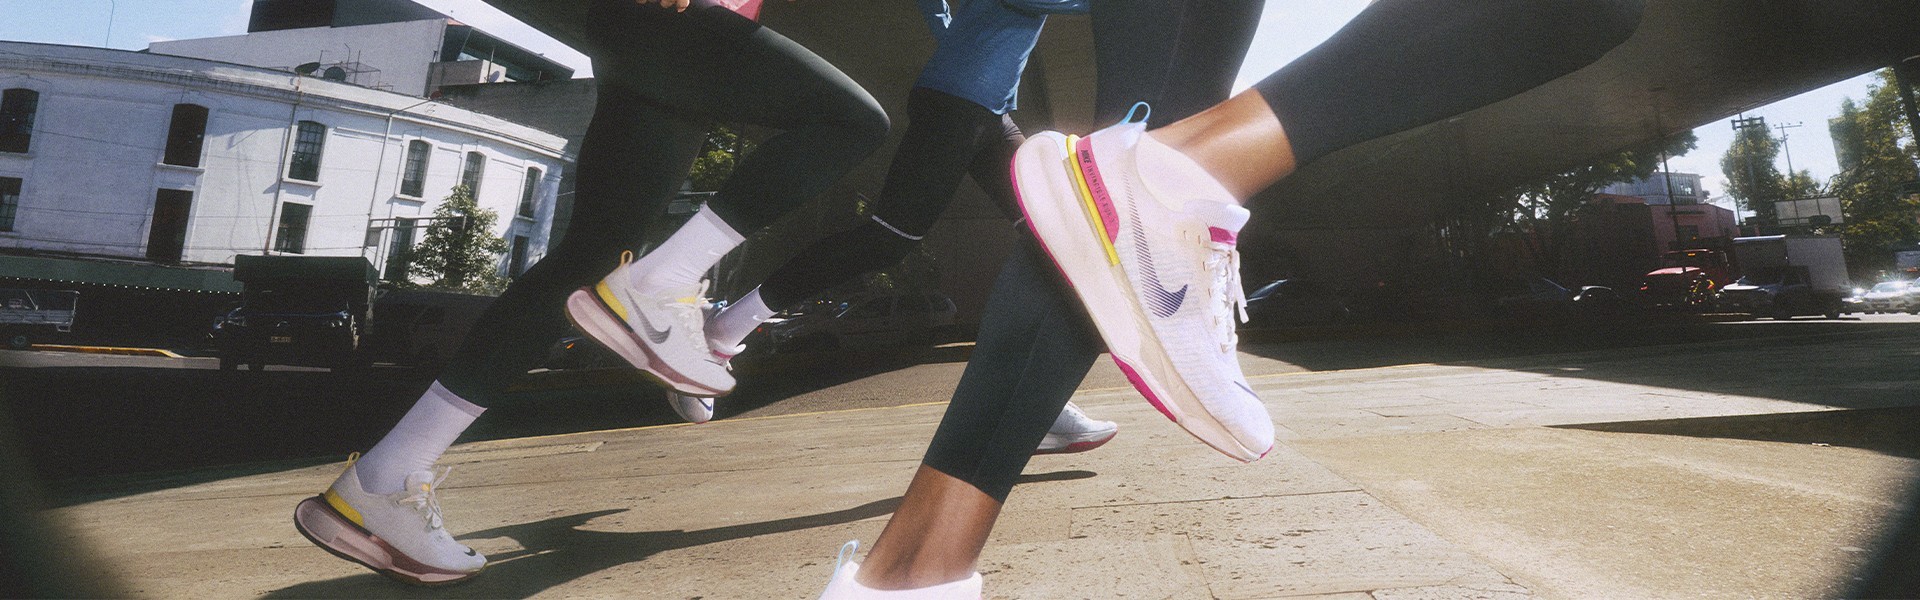 Nike Leggings Just Do It Nero Donna - Acquista online su Sportland